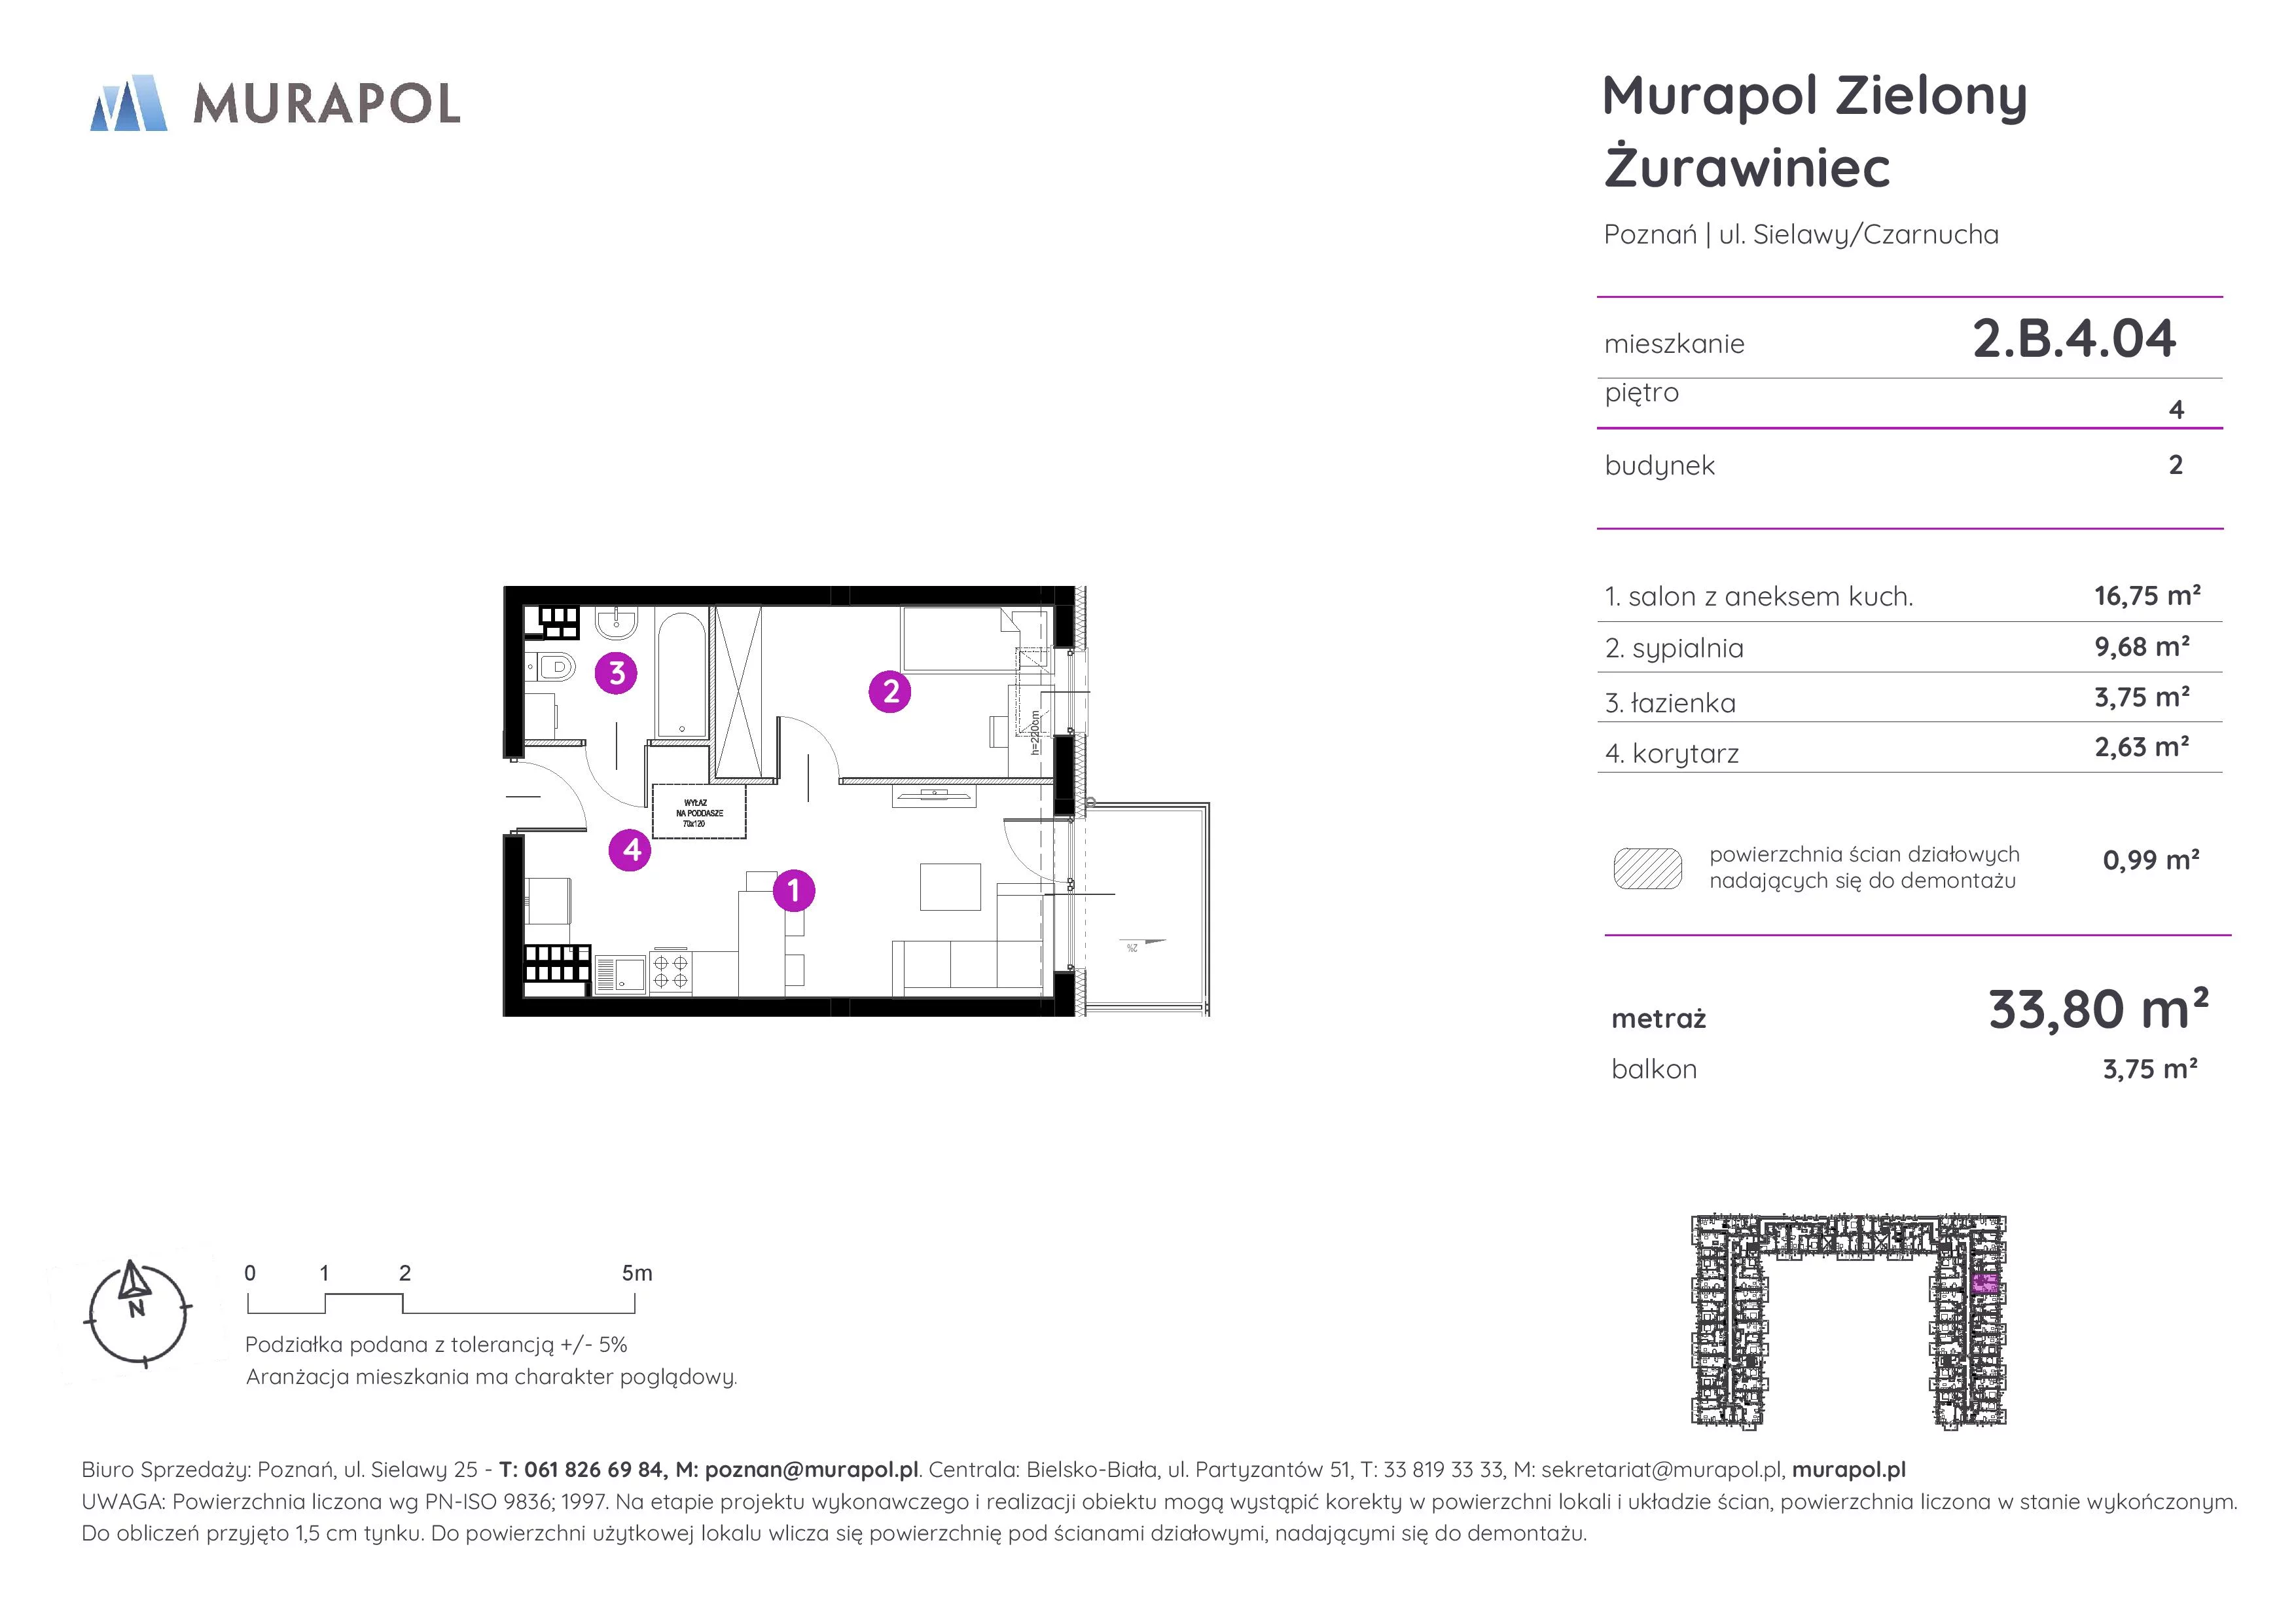 Mieszkanie 33,80 m², piętro 4, oferta nr 2.B.4.04, Murapol Zielony Żurawiniec, Poznań, Naramowice, ul. Sielawy